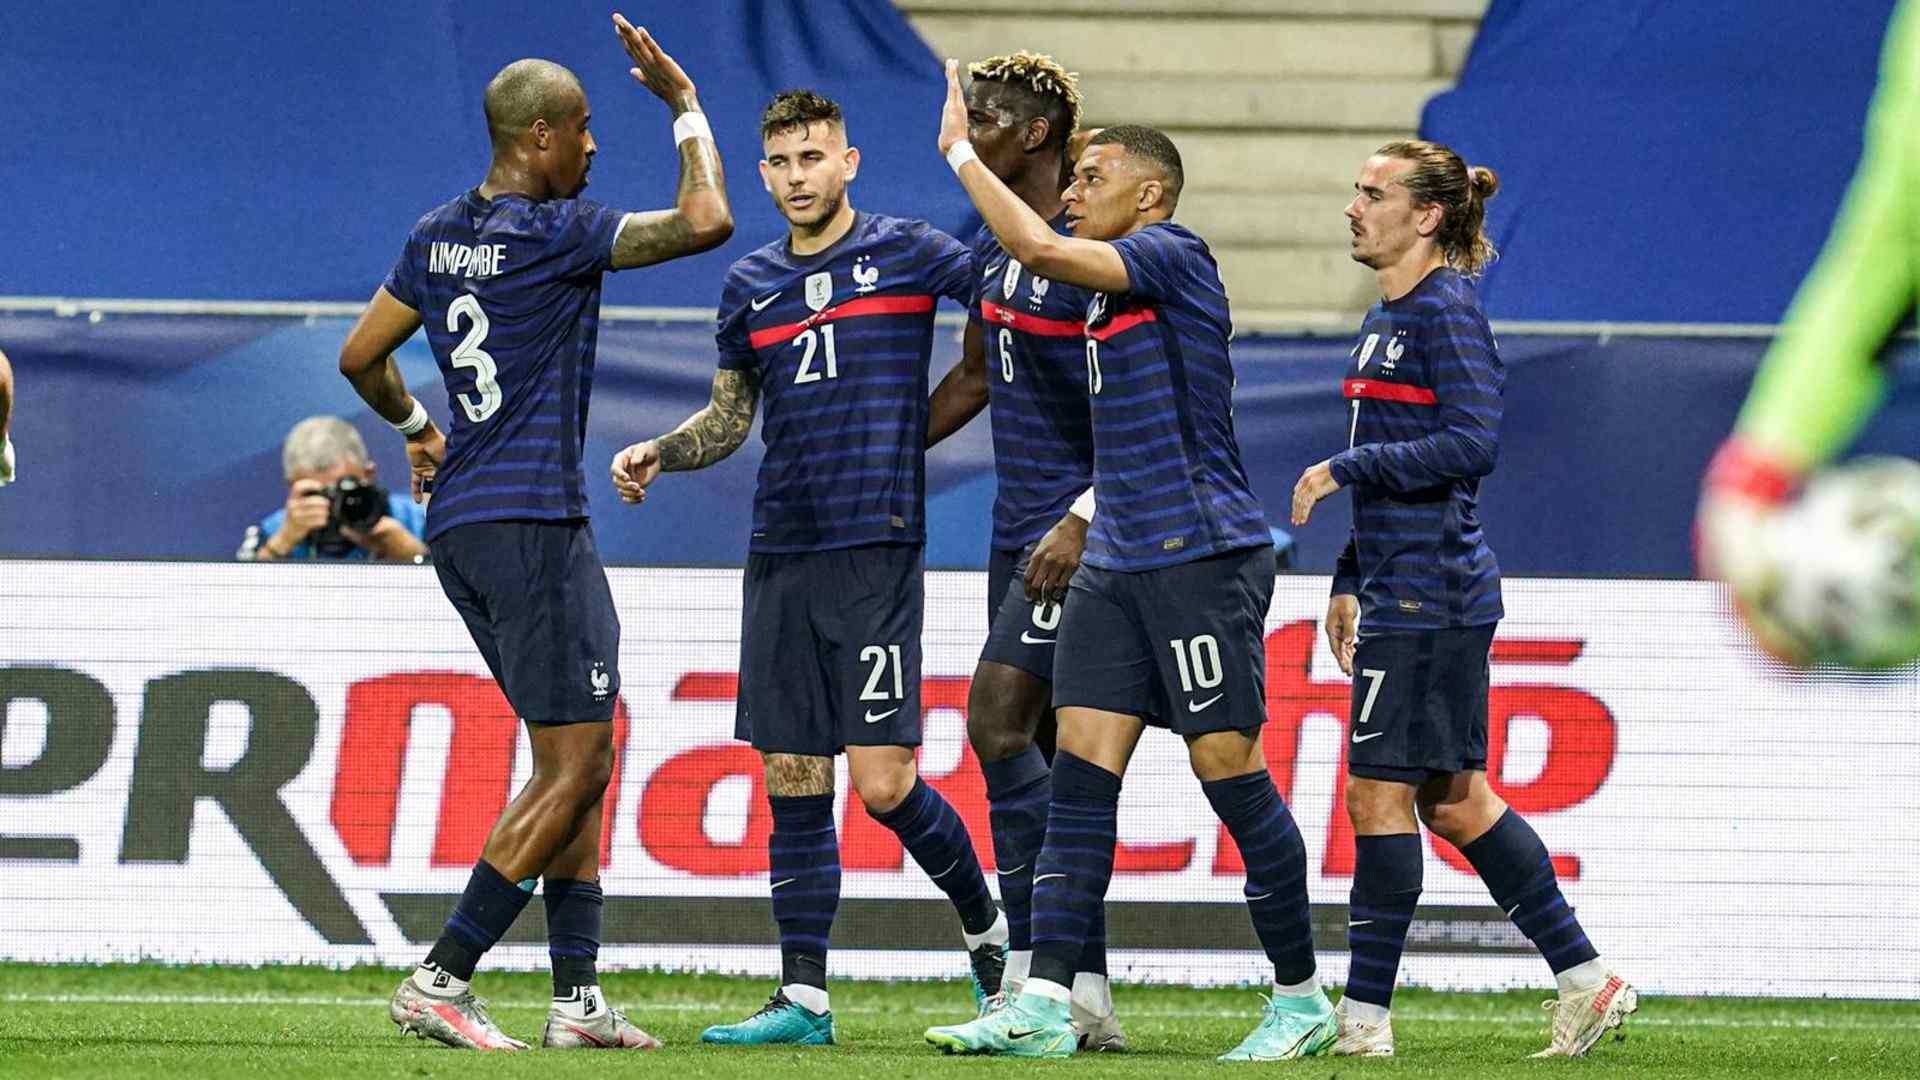 Французы играли. Французы играющие в Сити. Португалия Франция финал евро 2016 победа. Франция проиграла битву но Франция. Левшук играл за Францию.